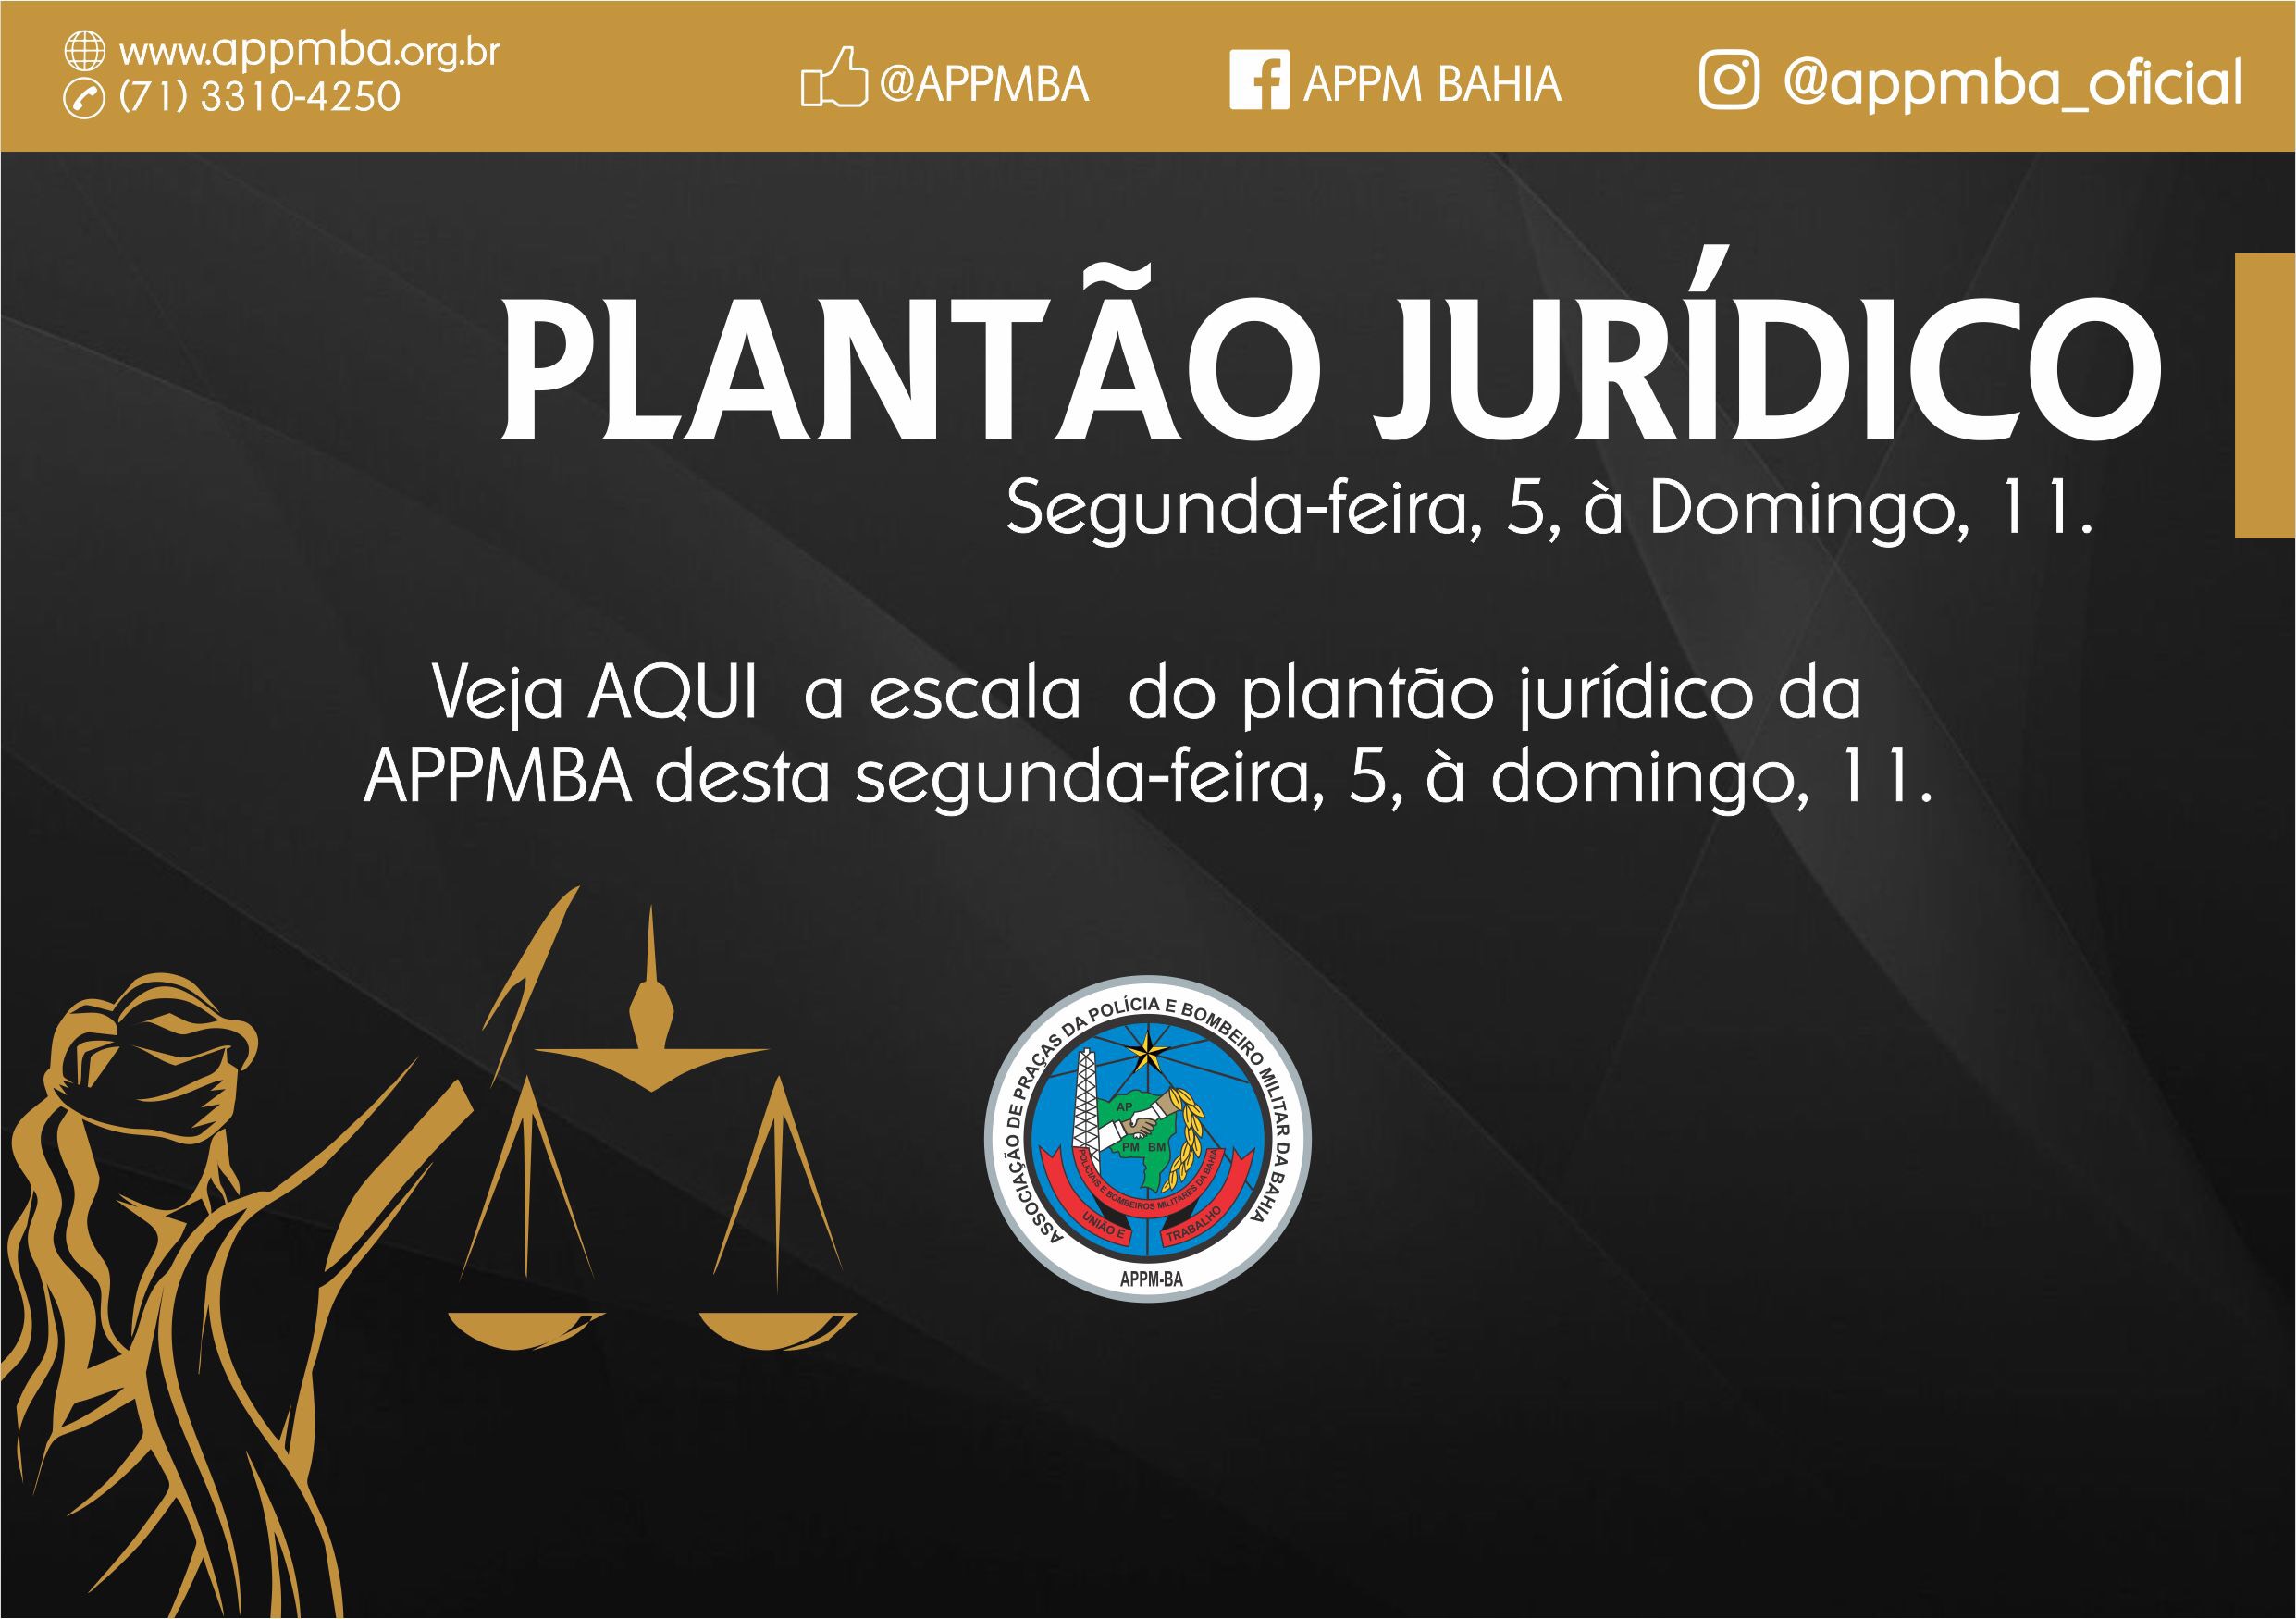 Plantão Jurídico APPM-BA, dias 5 à 11/11/2018